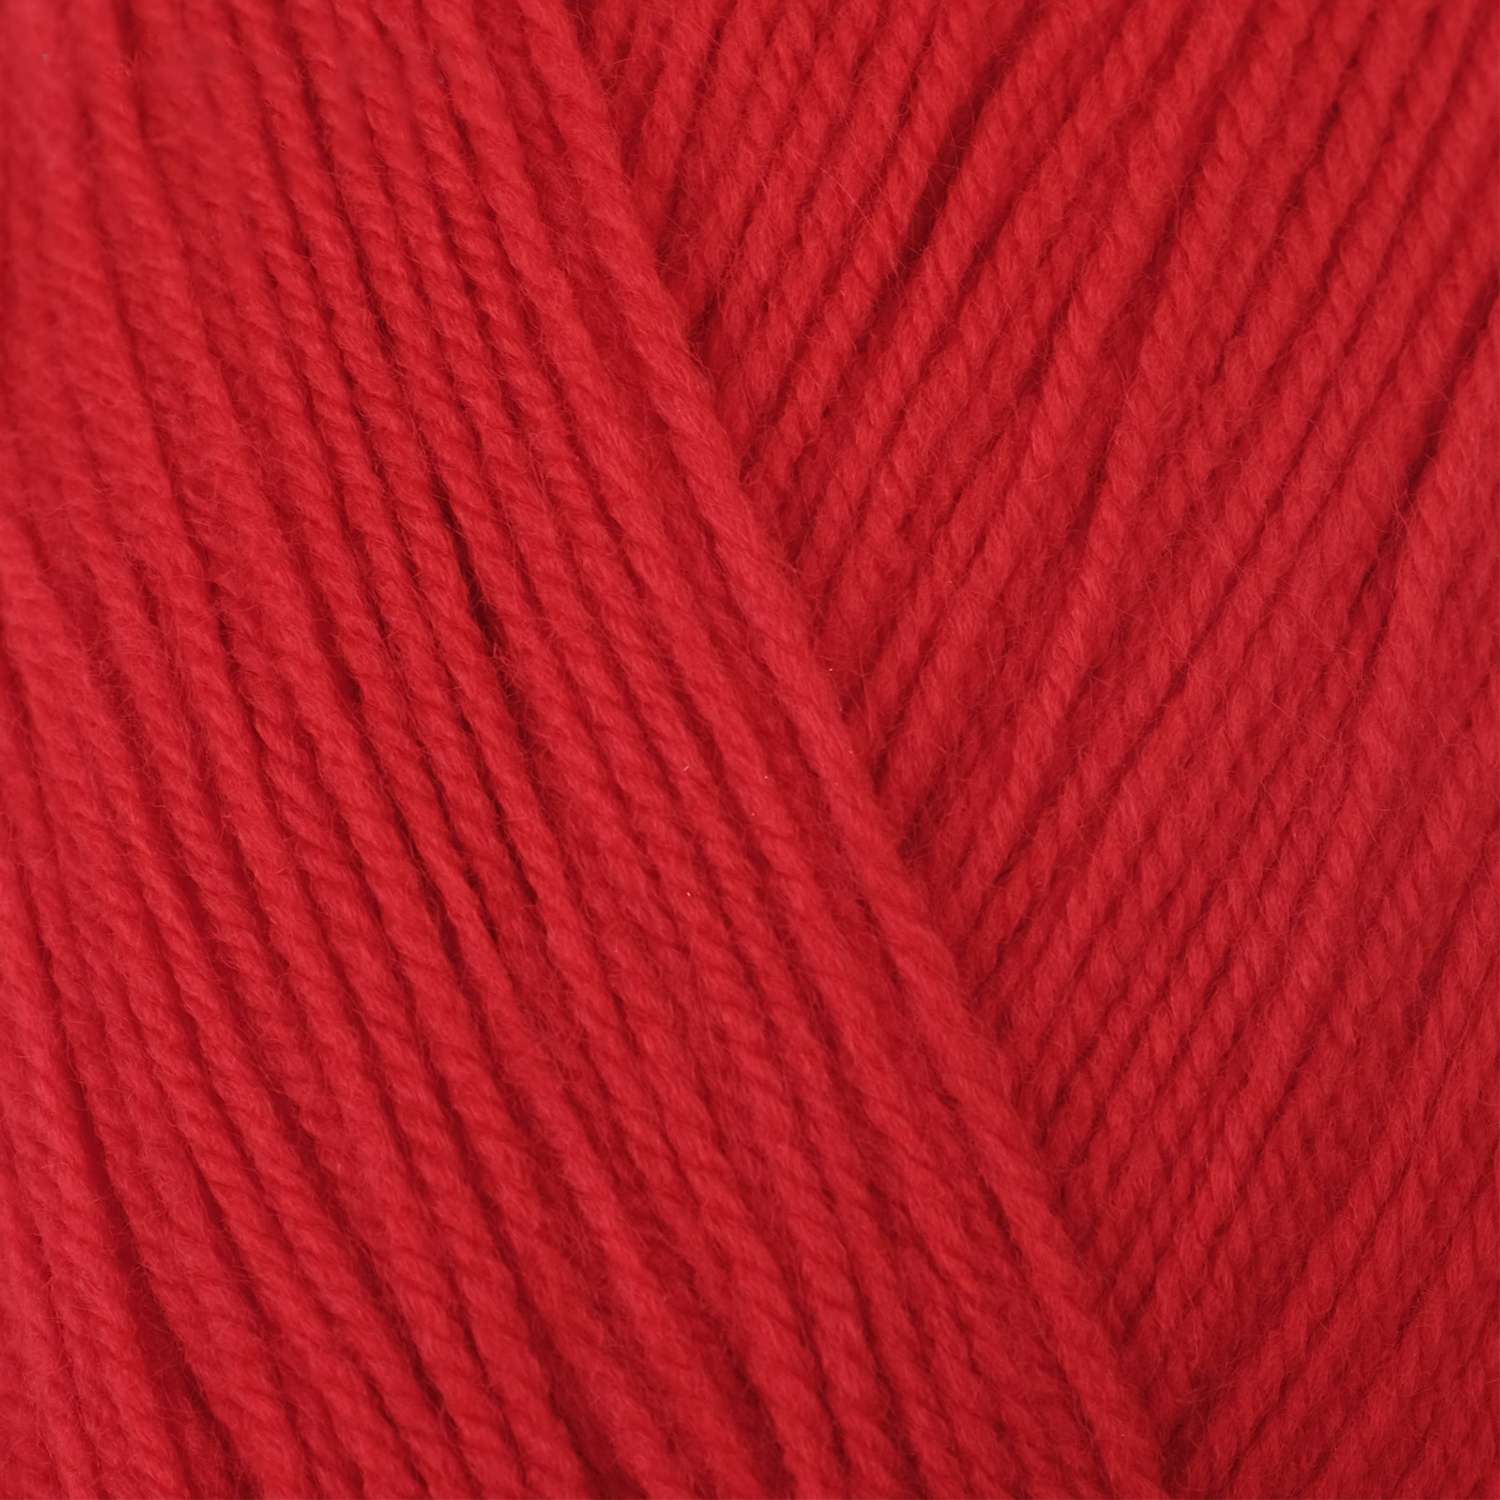 Пряжа Пехорский текстиль Красный 3915641 - фото 2